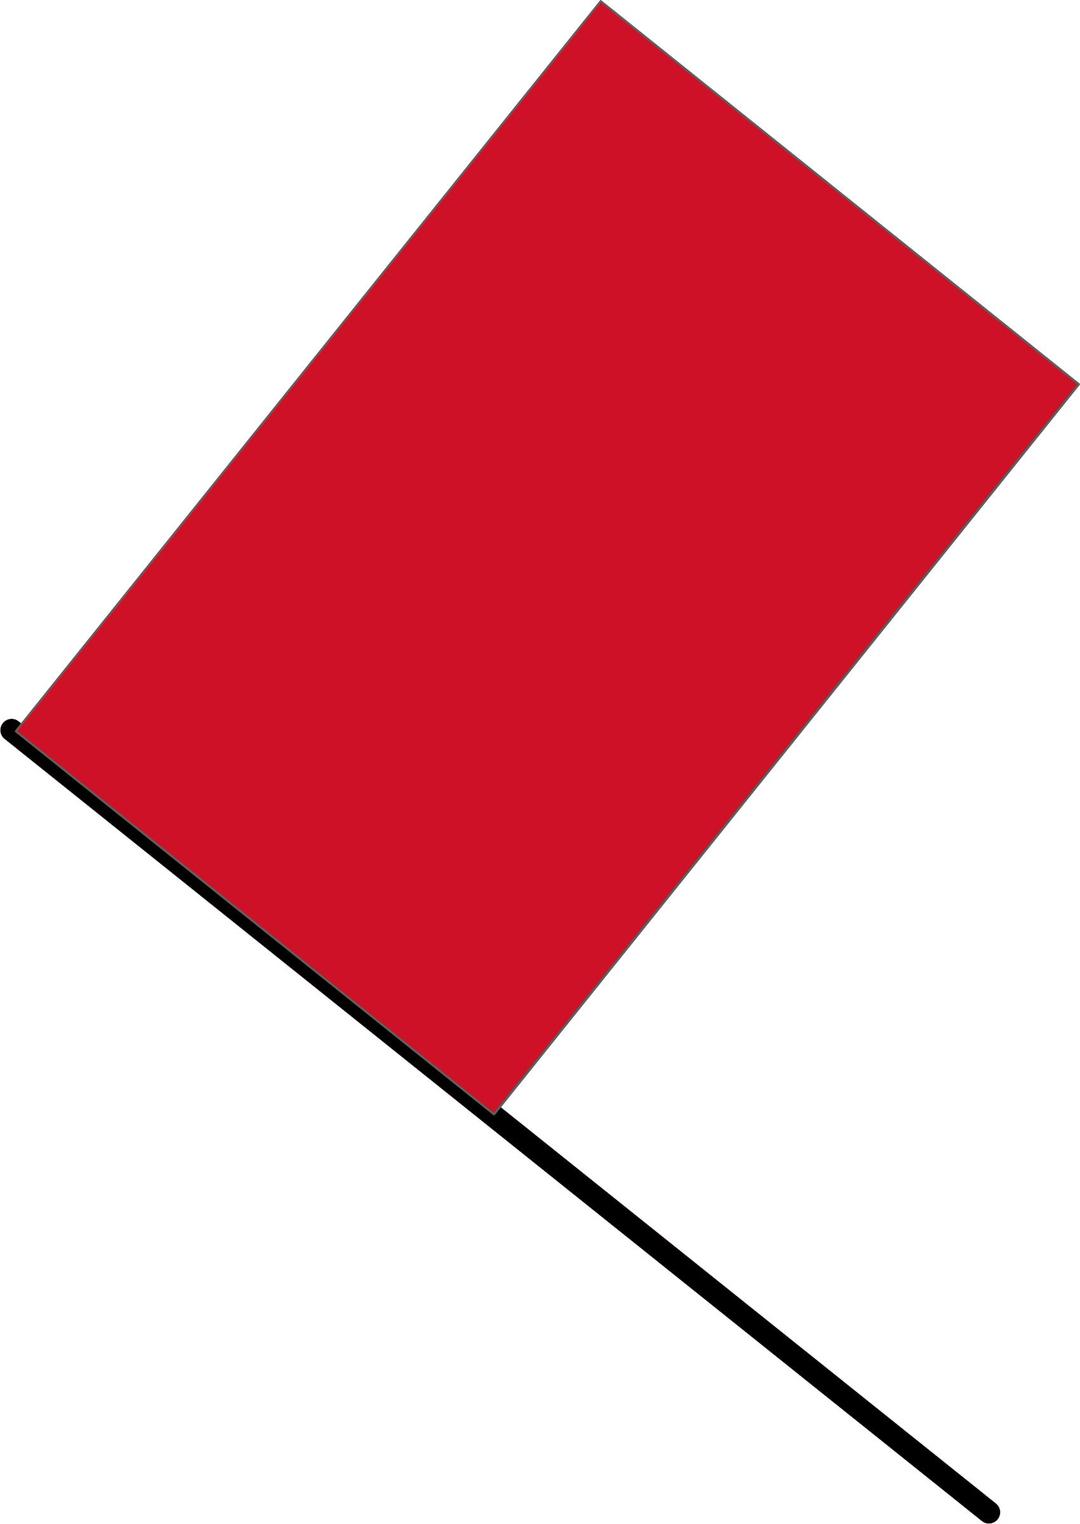 red flag png transparent